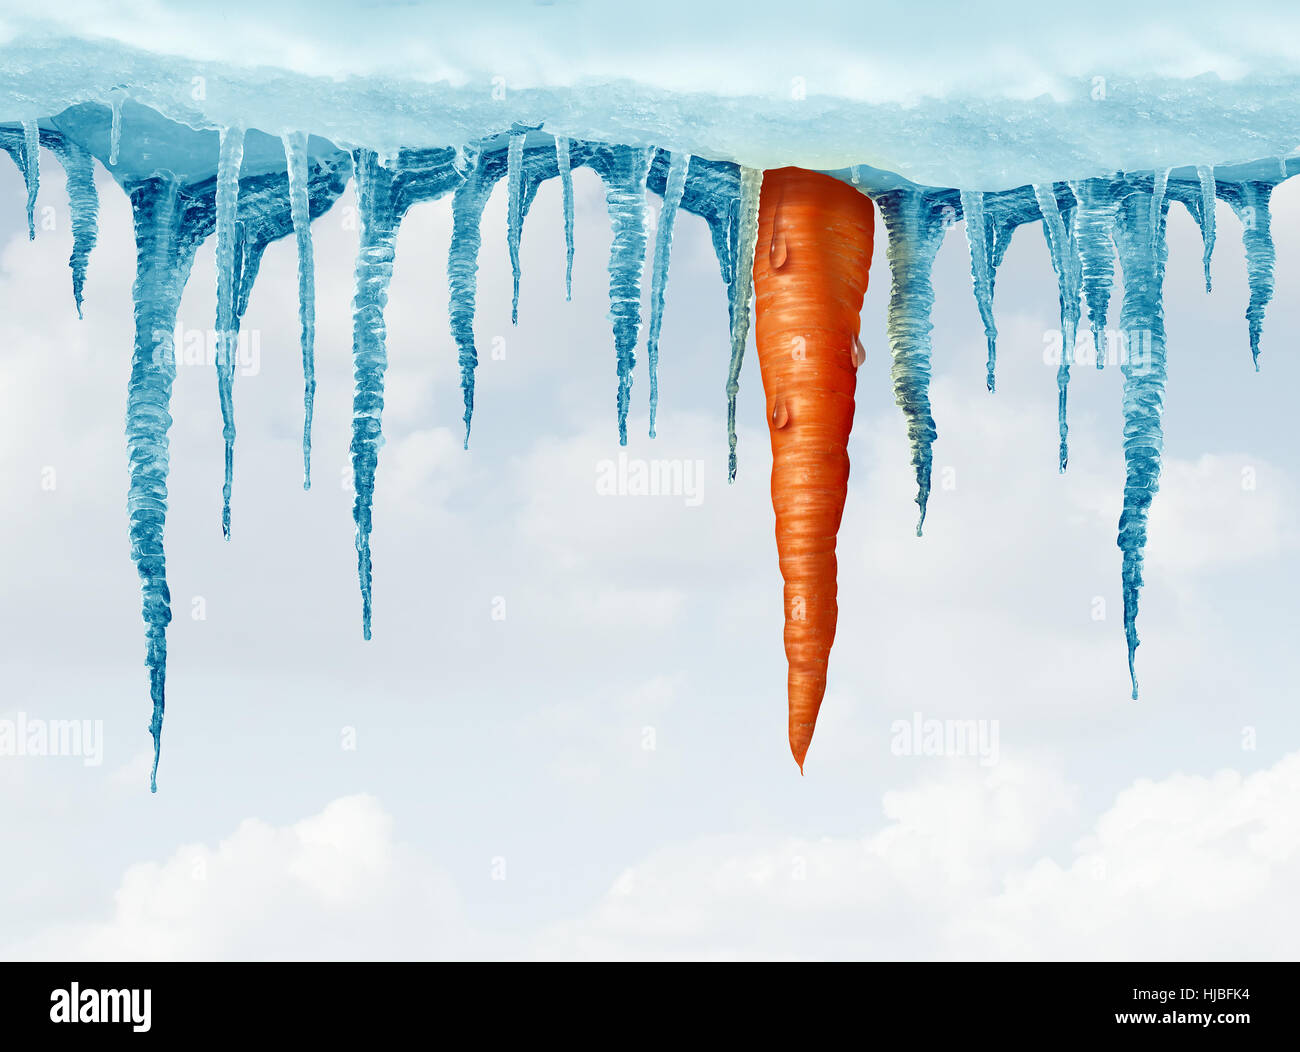 Winter-Diät-Konzept und Erhaltung und frisches knackiges Gemüse Symbol als eine Karotte hängen von einer Gruppe von gefrorenen Eiszapfen als essen frische-Id speichern Stockfoto